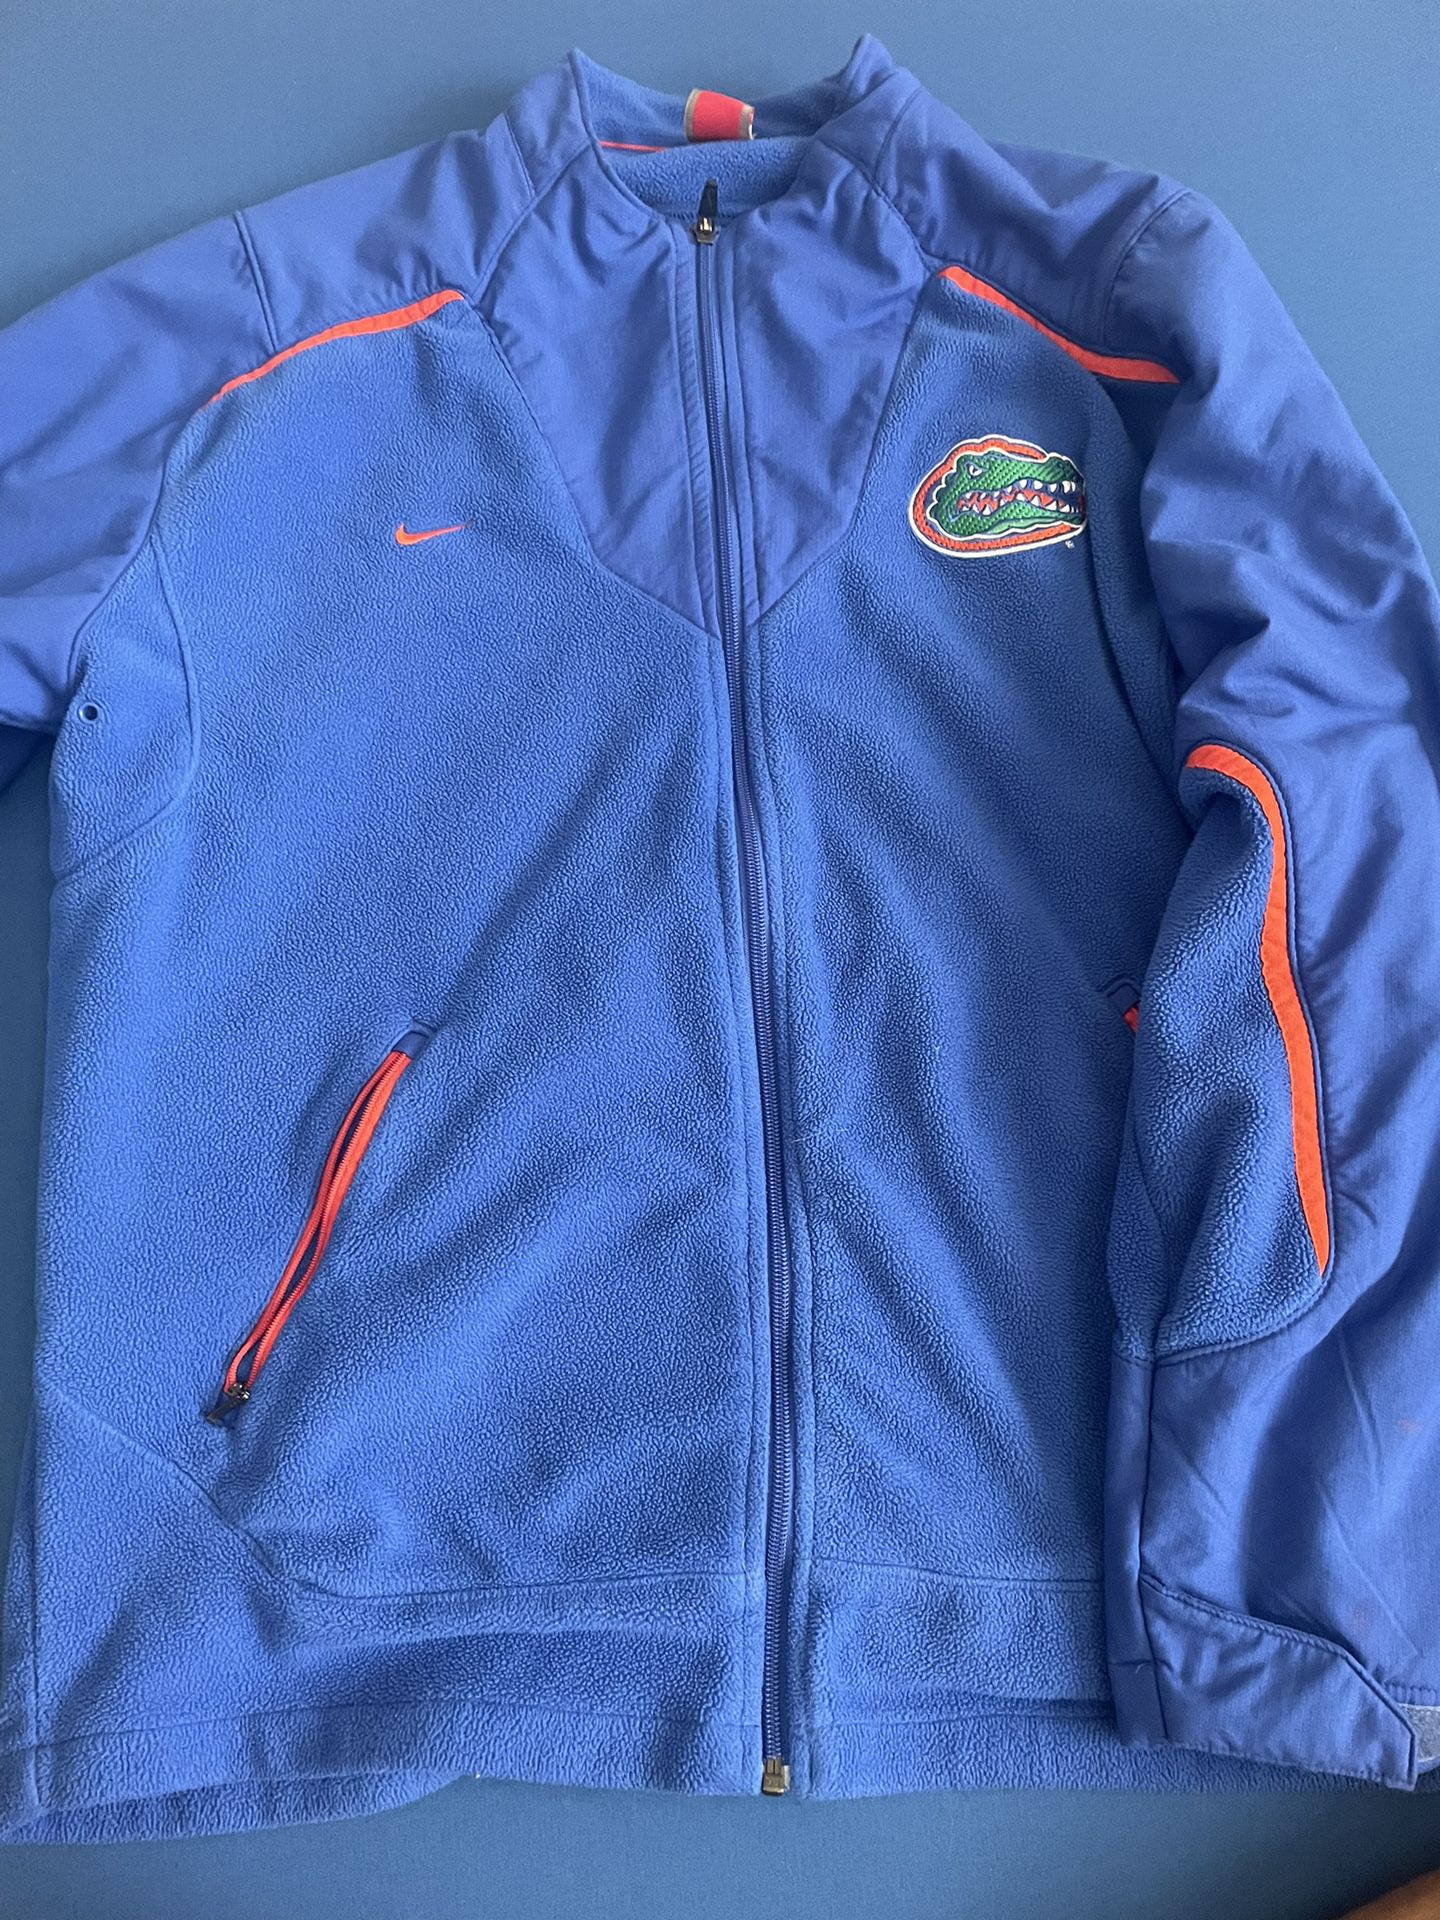 Florida Gator Jacket